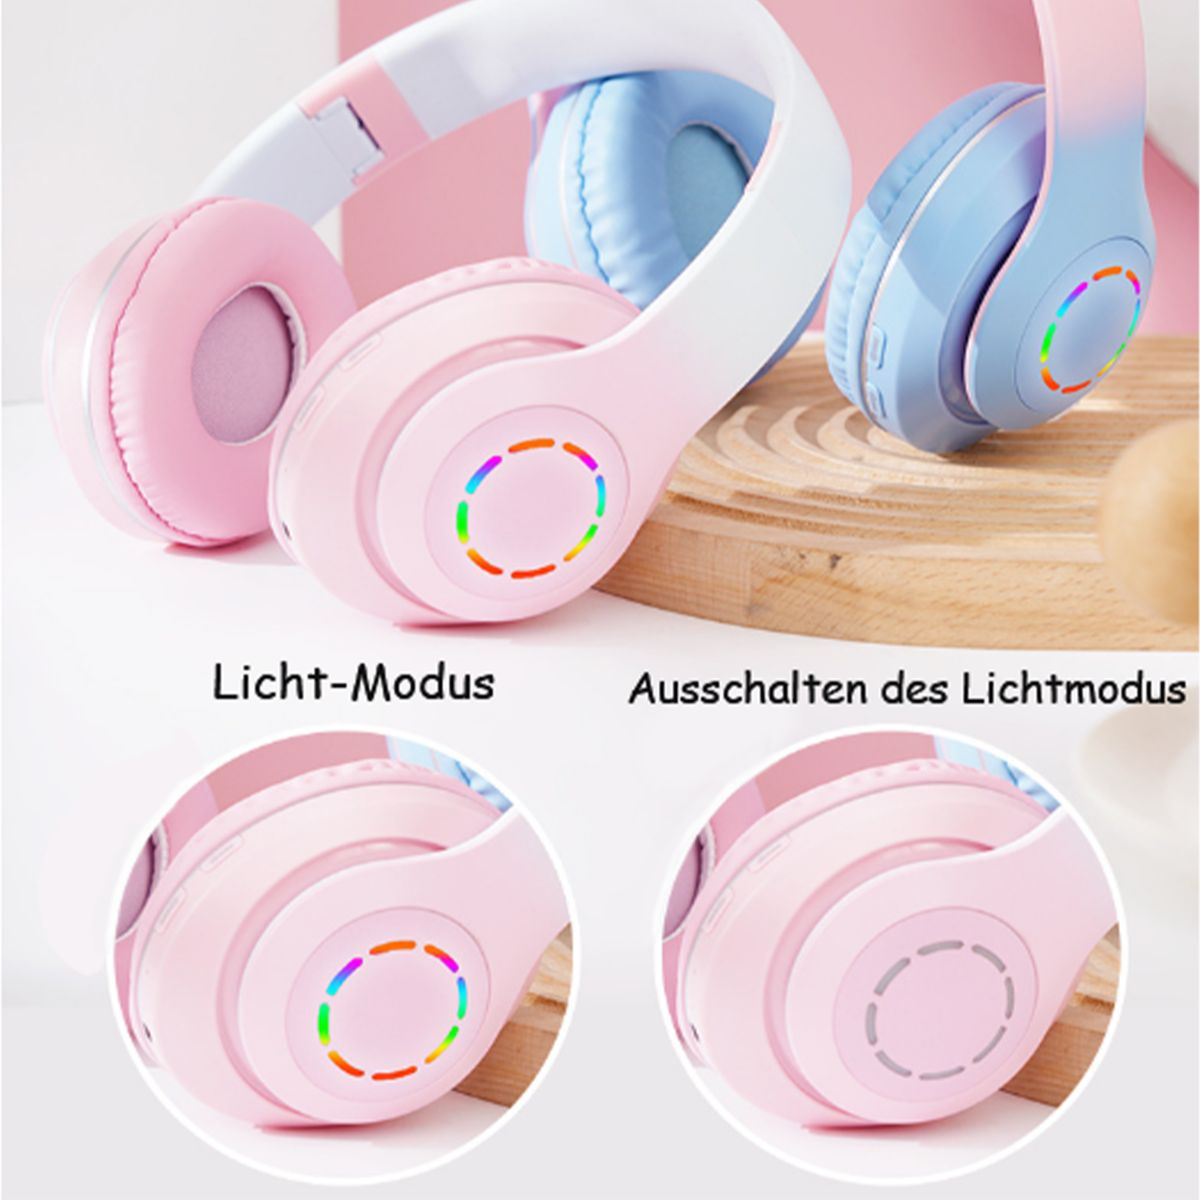 KINSI Bluetooth-Kopfhörer, Funk-Kopfhörer, Over Over-ear Bluetooth Kopfhörer Headset, Kopfhörer, Farbverlaufs-Pulver Ear Kabelloses